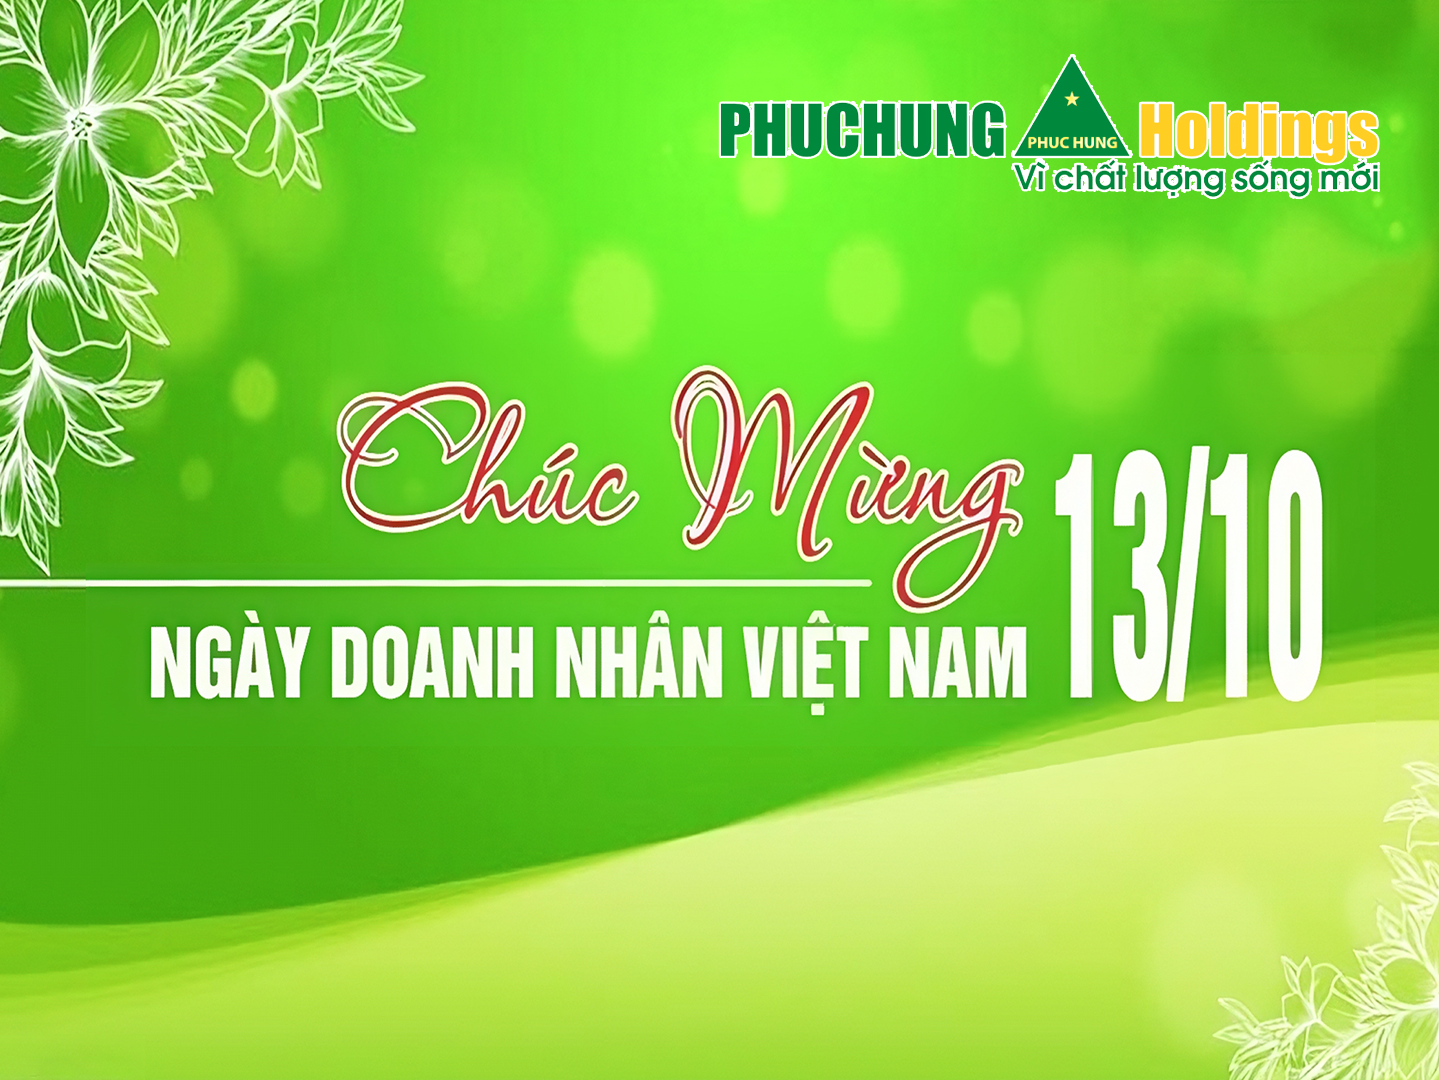 Nhân ngày Doanh nhân Việt Nam 13/10, Phục Hưng Holdings trân trọng gửi lời chúc tốt đẹp nhất tới các Doanh nhân